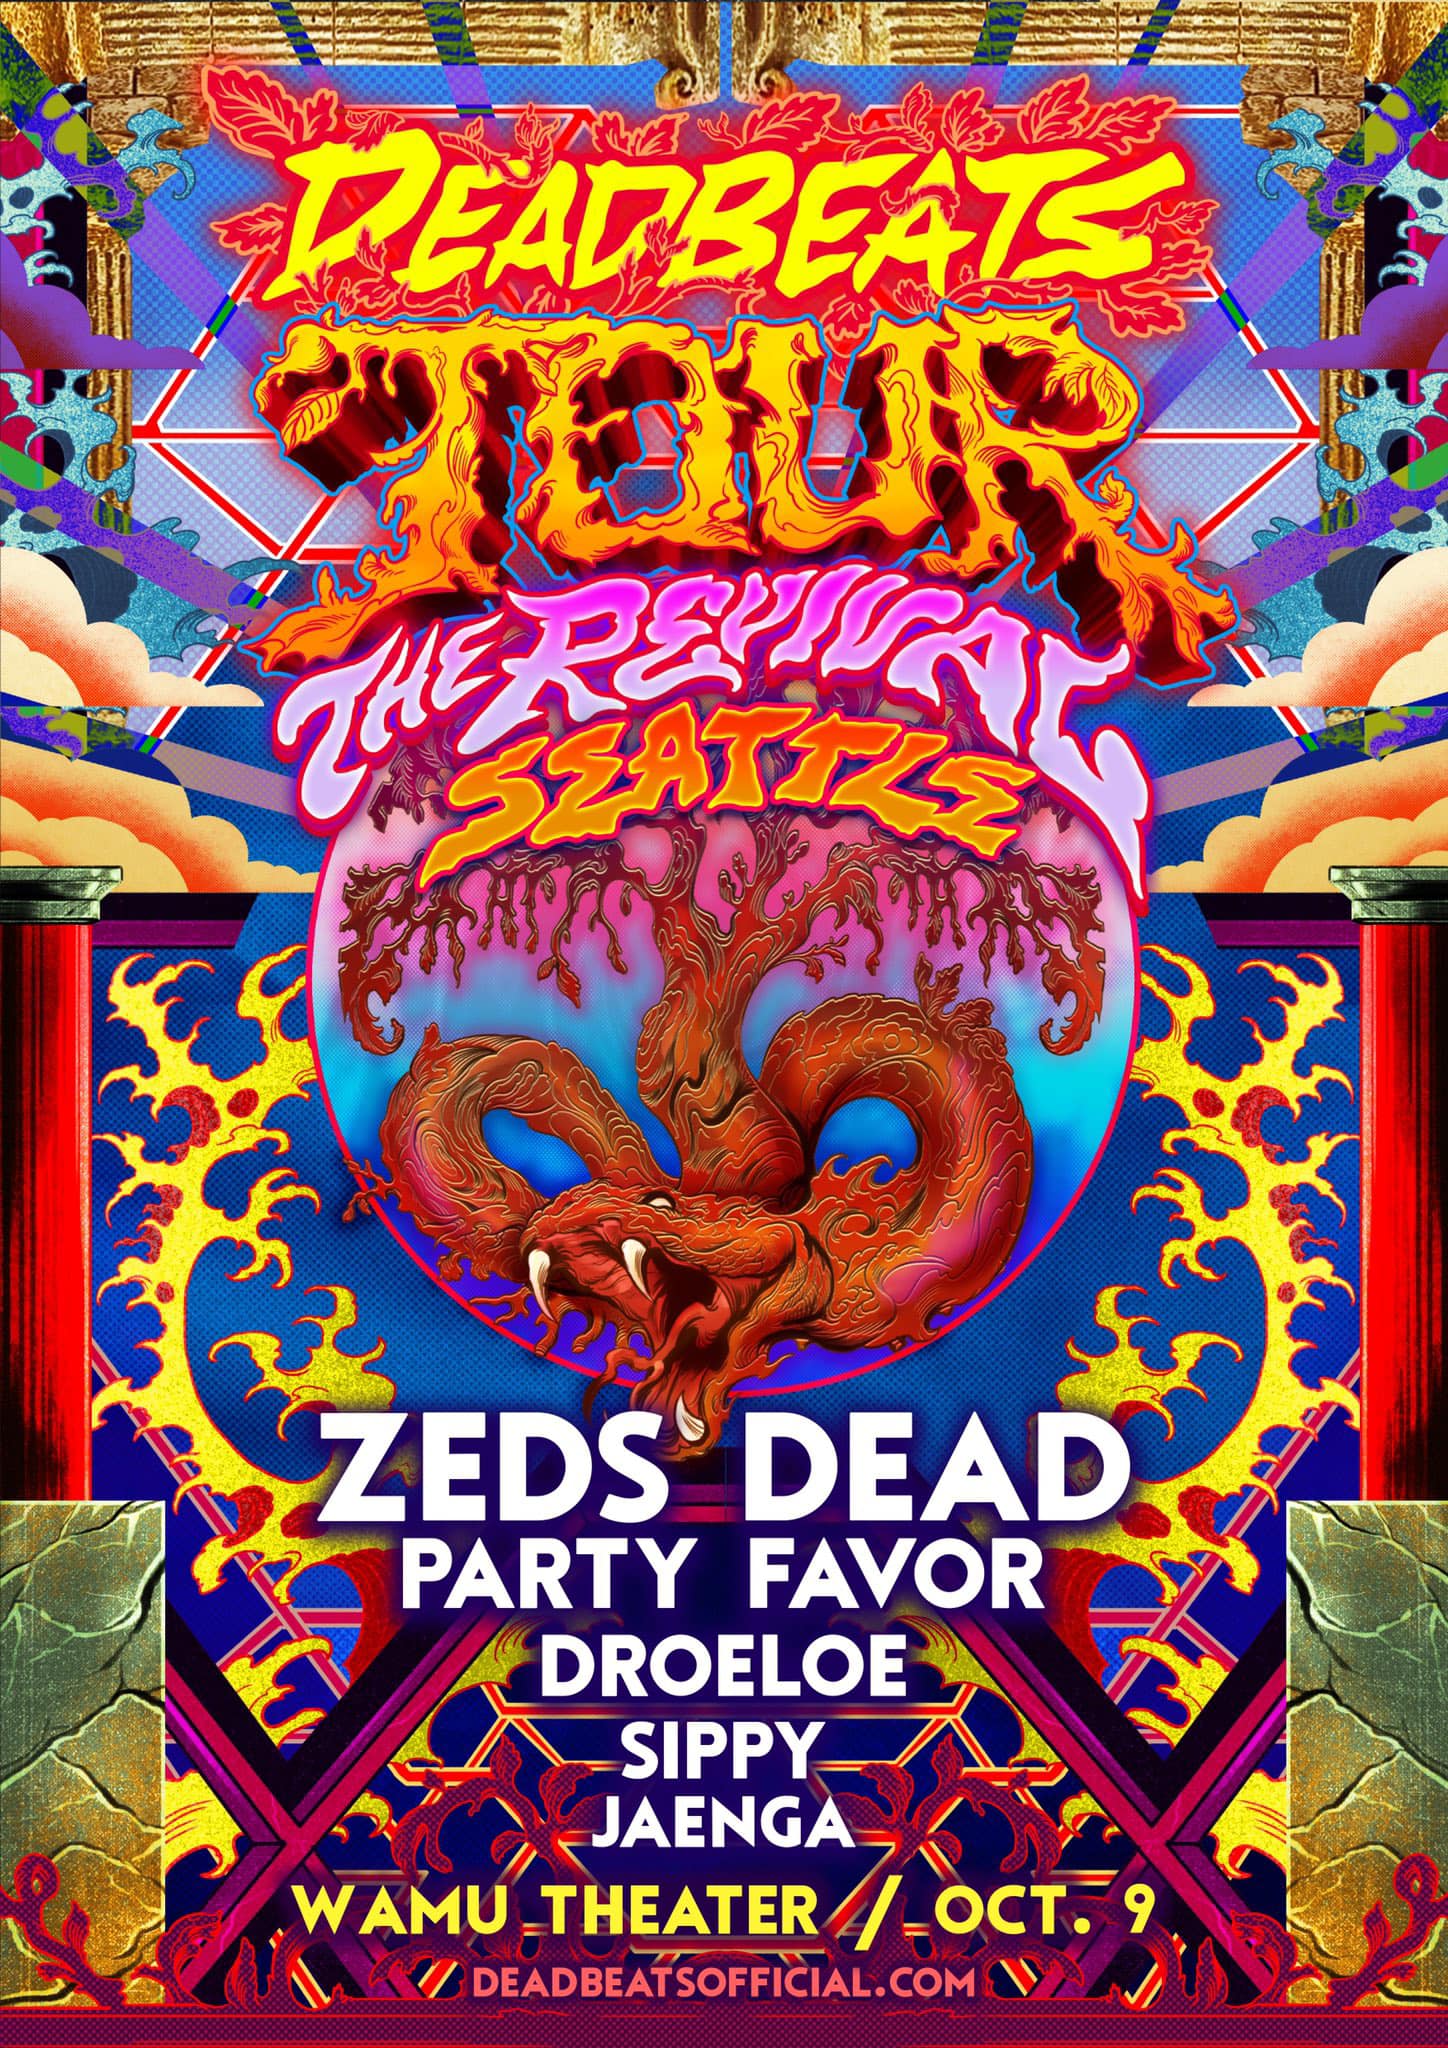 Zeds Dead: Deadbeats 2021 Revival Tour